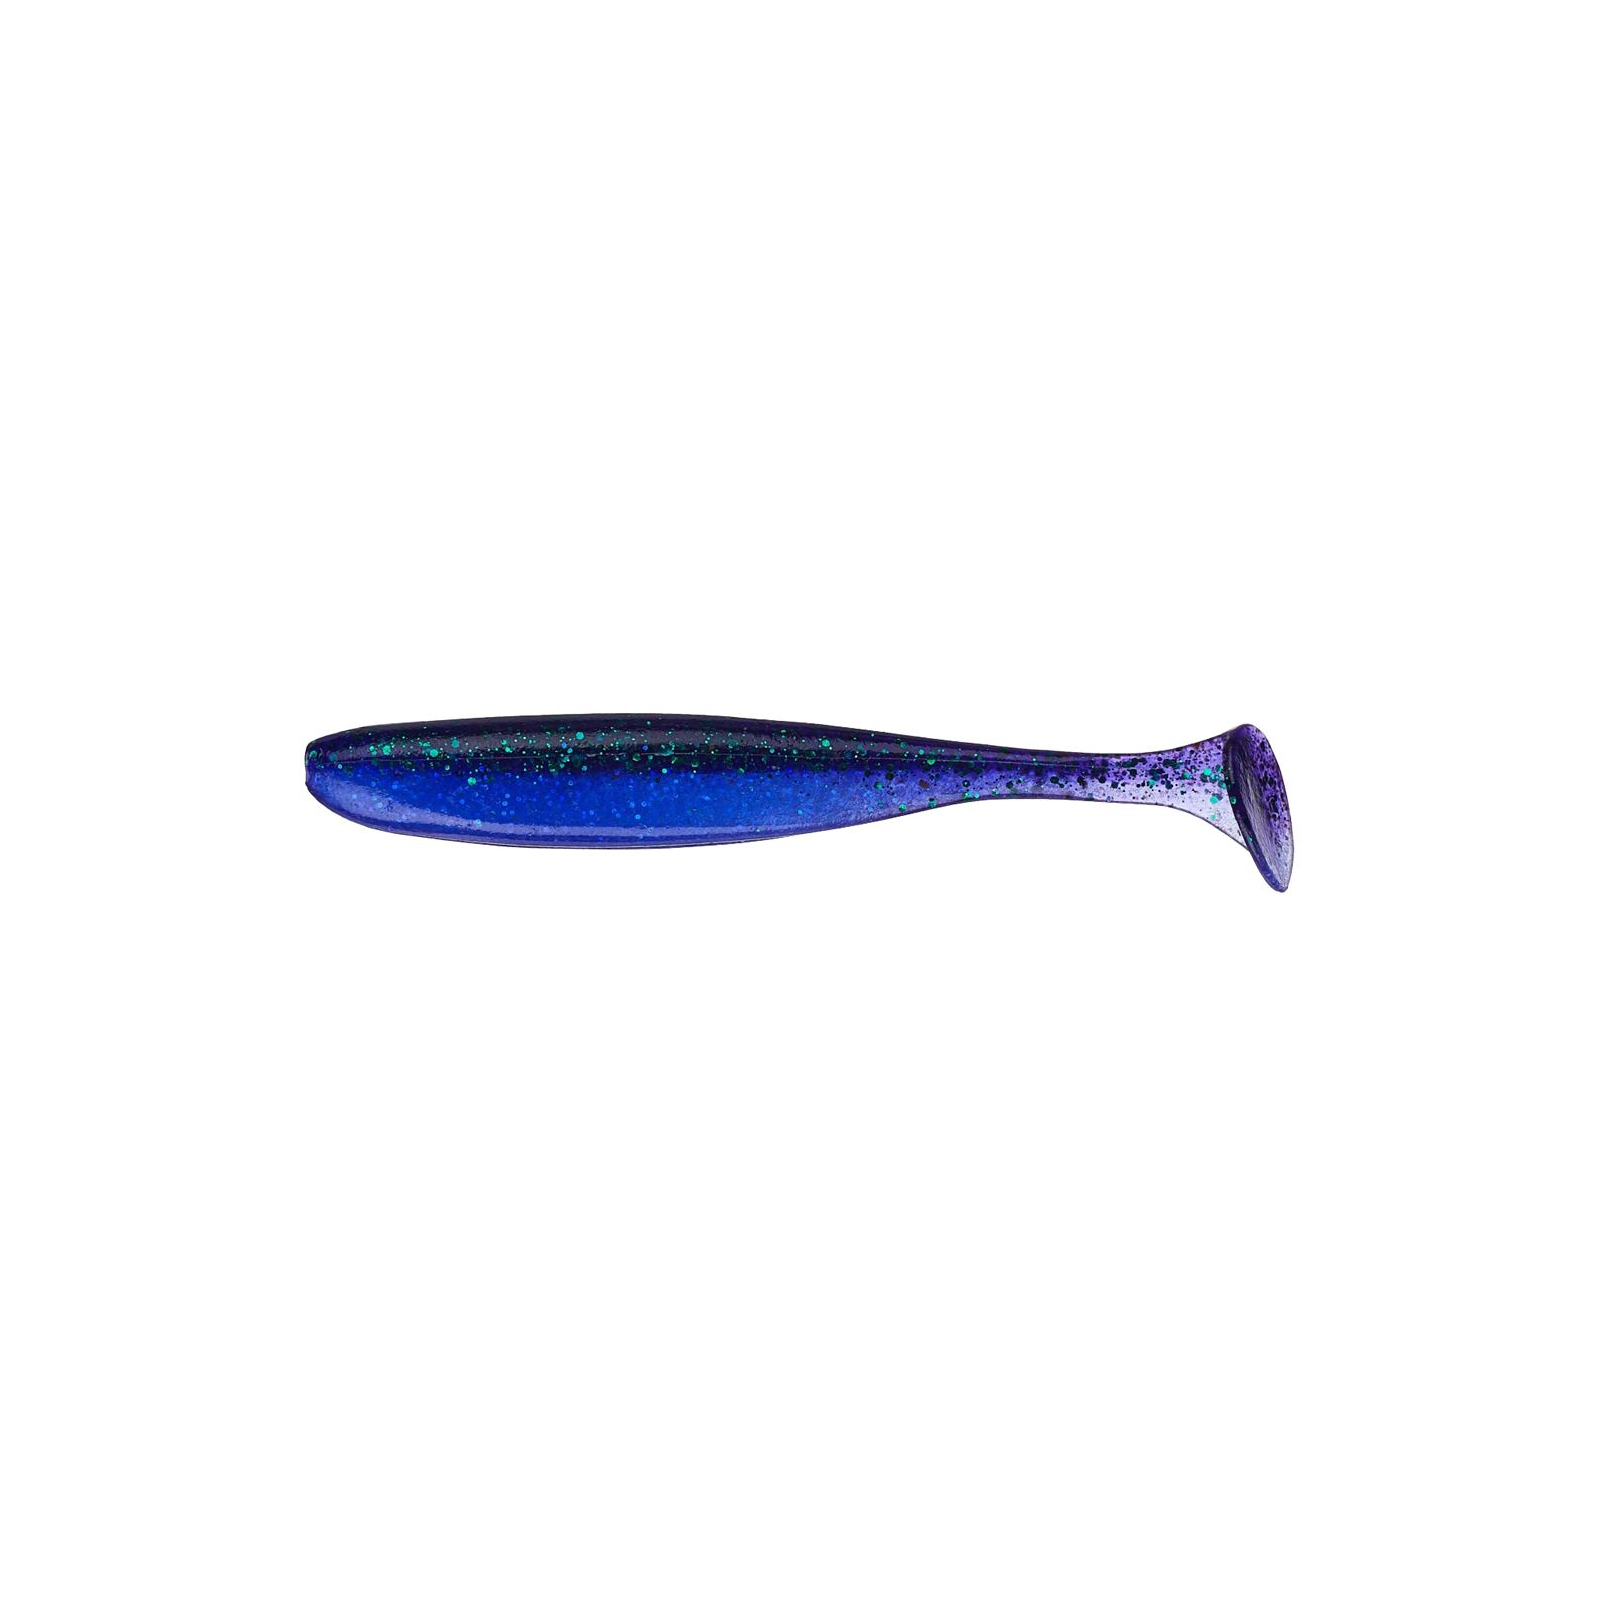 Силикон рыболовный Keitech Easy Shiner 4.5" (6 шт/упак) ц:408 electric june bug (1551.08.40)